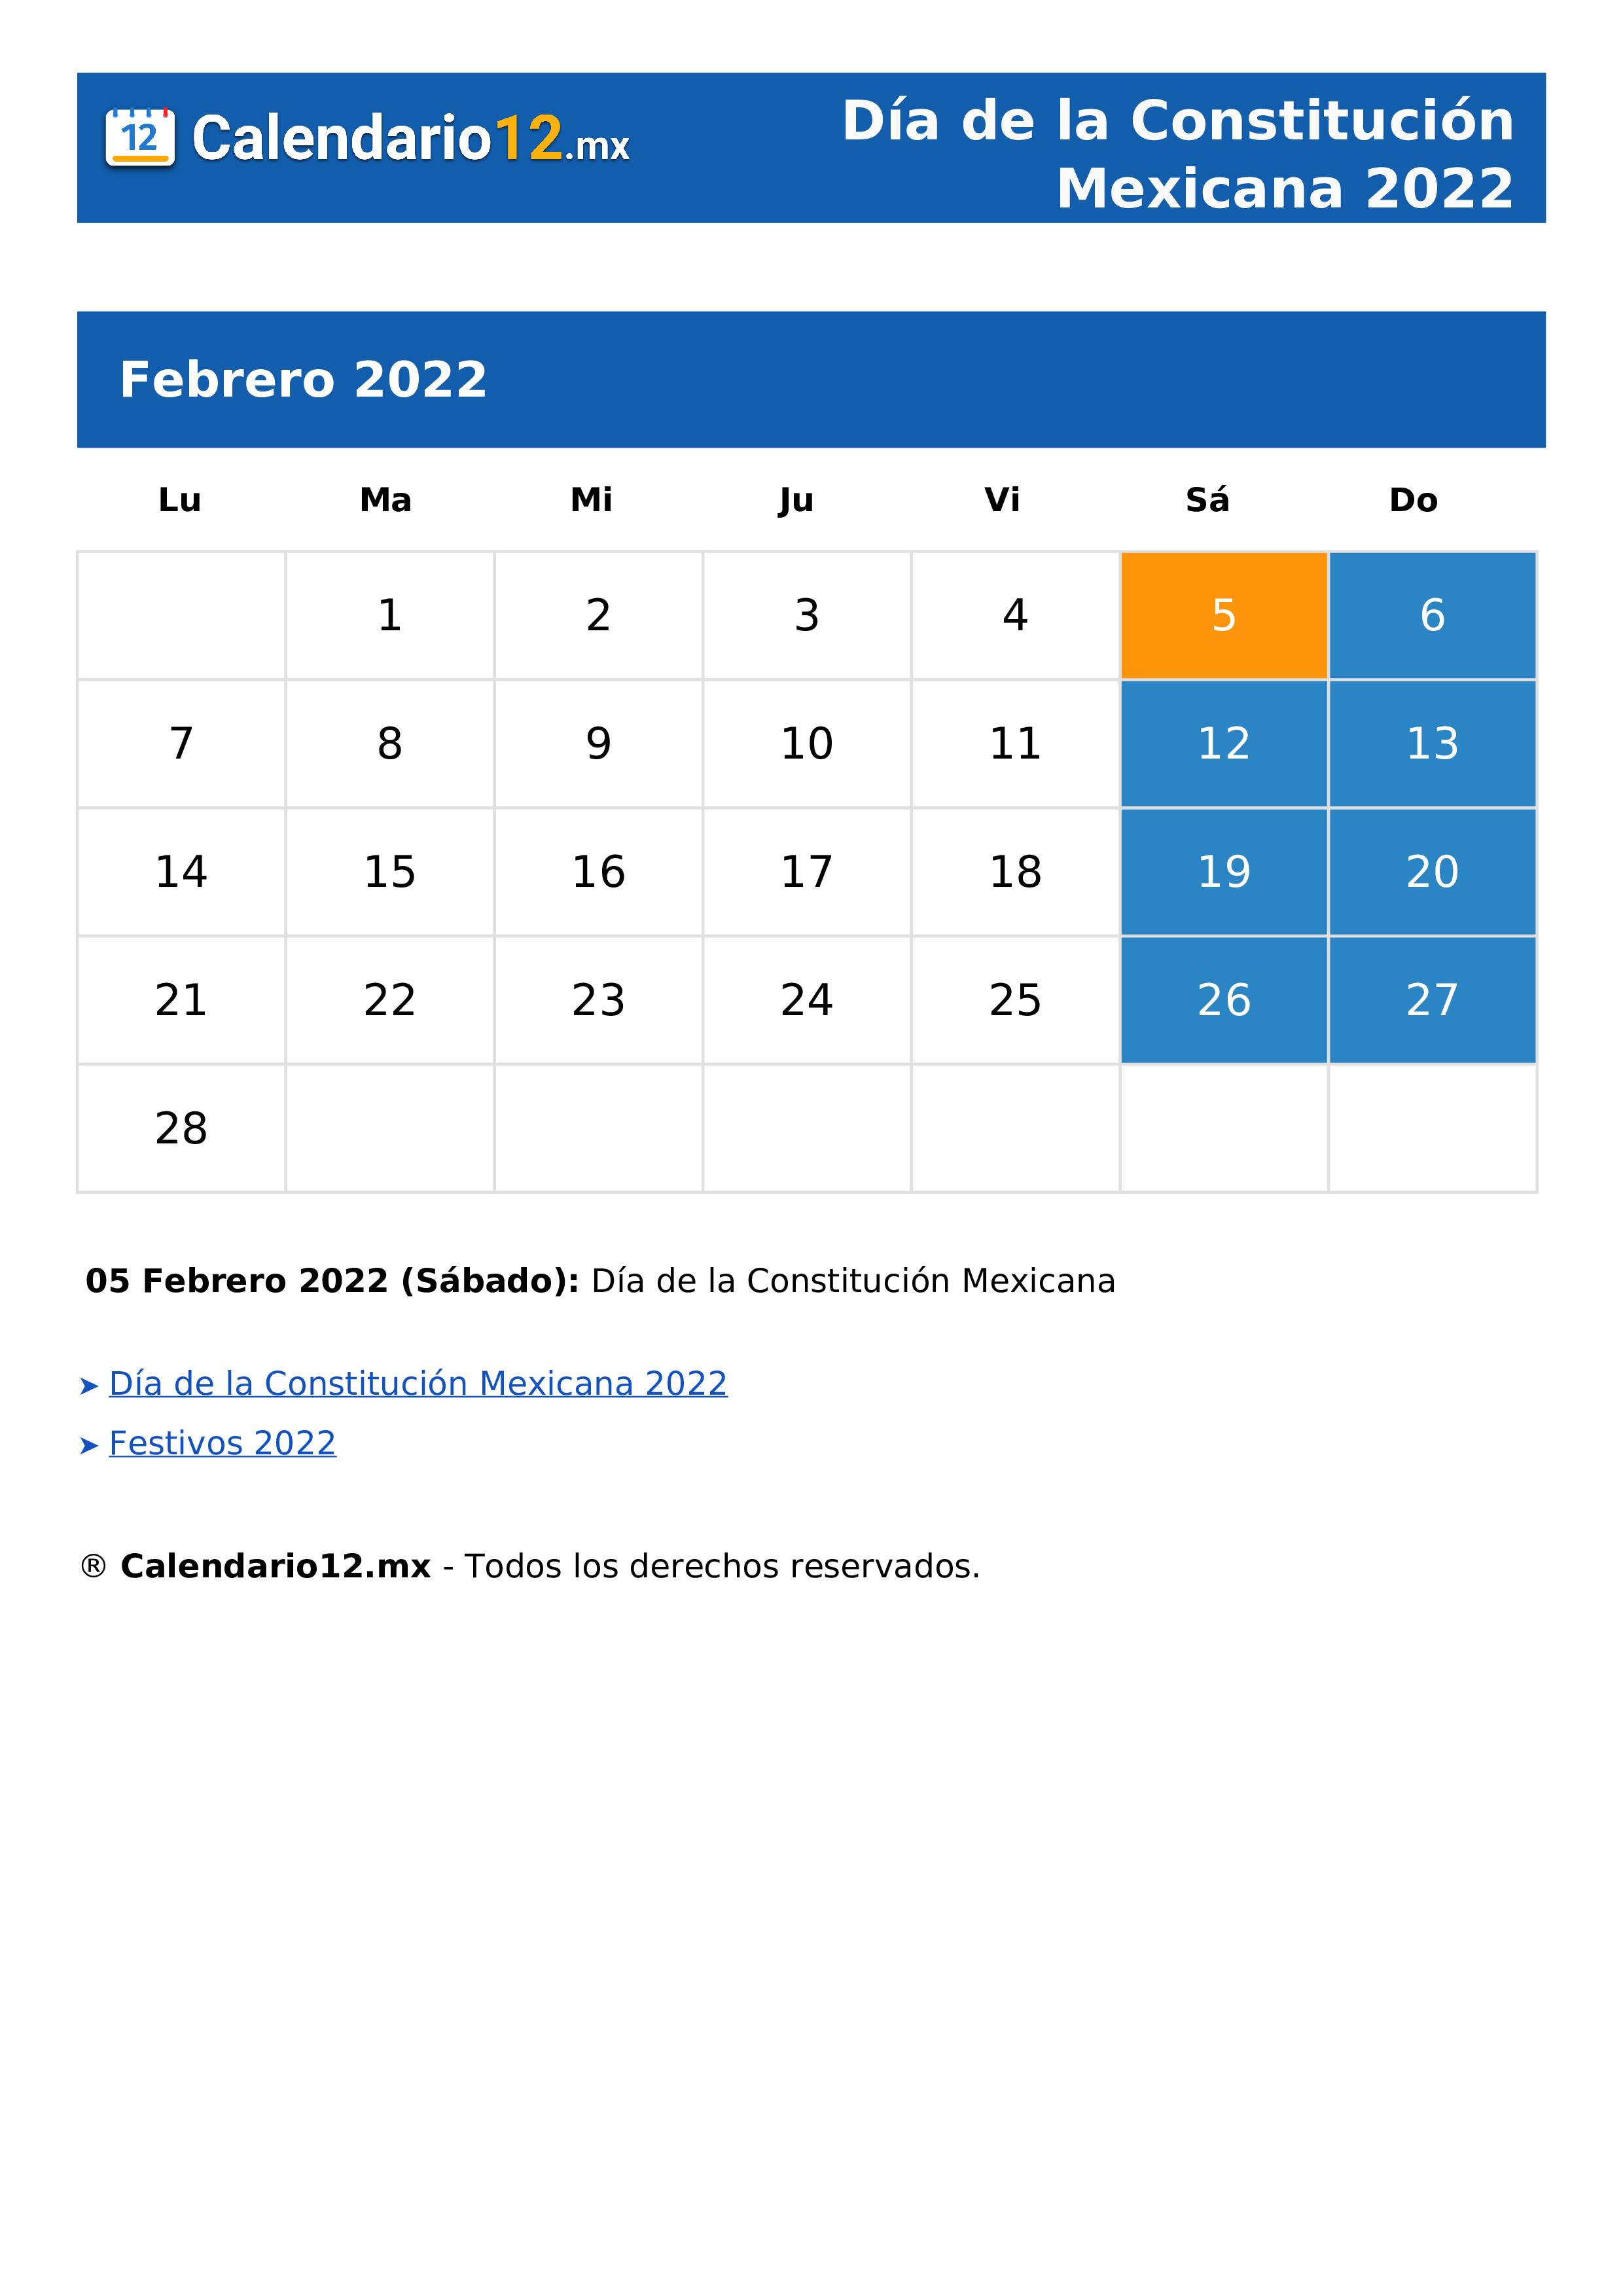 Día de la Constitución Mexicana 2022